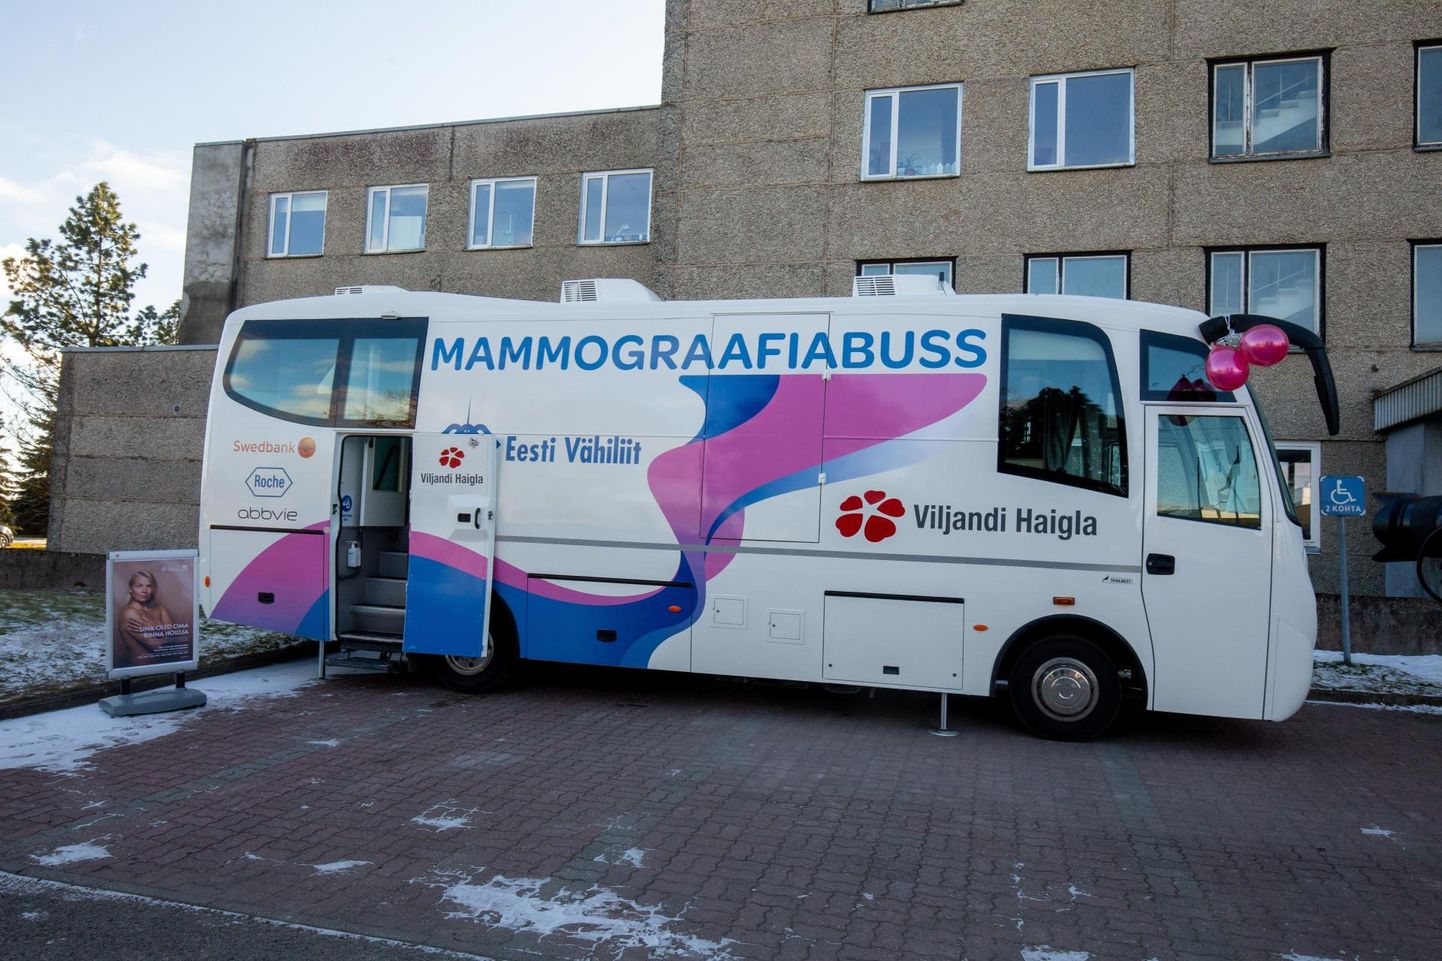 VILJANDI, EESTI,05MAR21
Viljandi haigla sai endalemammograafiabussi. Eesti Vähiliit andis Viljandi haiglale üle oma mammograafiabussi.
ELMO RIIG/SAKALA